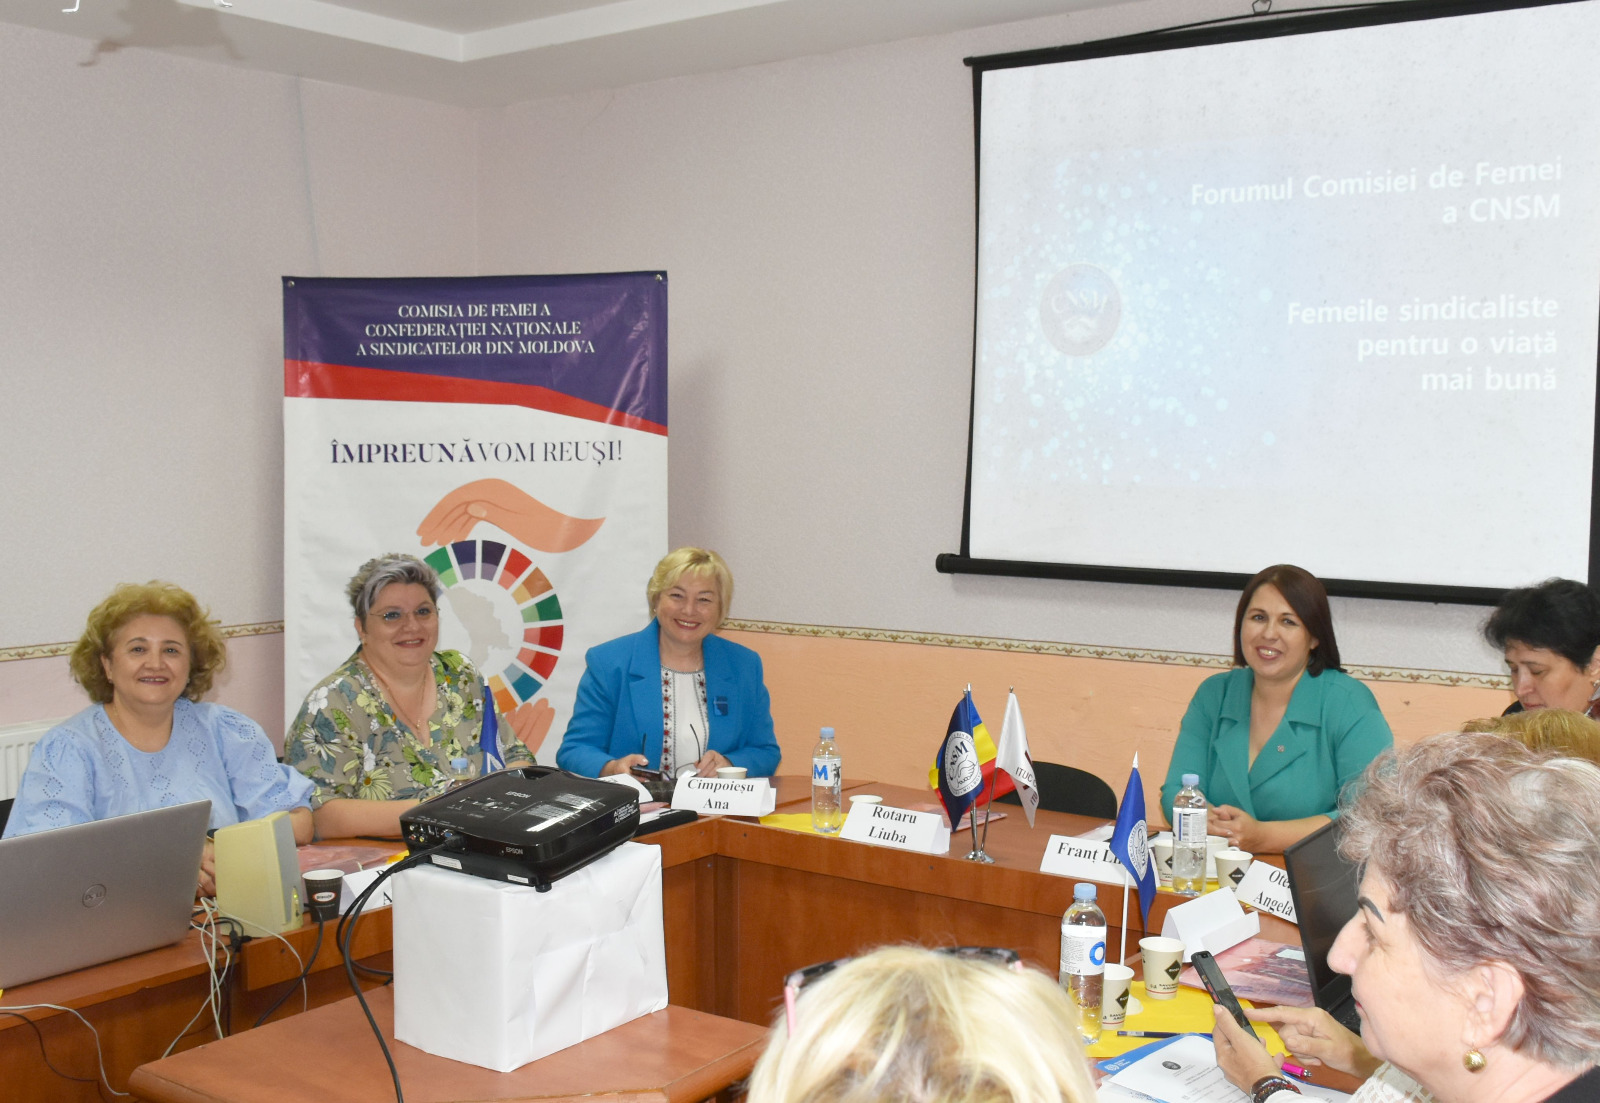 Vicepreședintele Organizației de Femei BNS a luat parte la Forumul Comisiei de Femei din Moldova